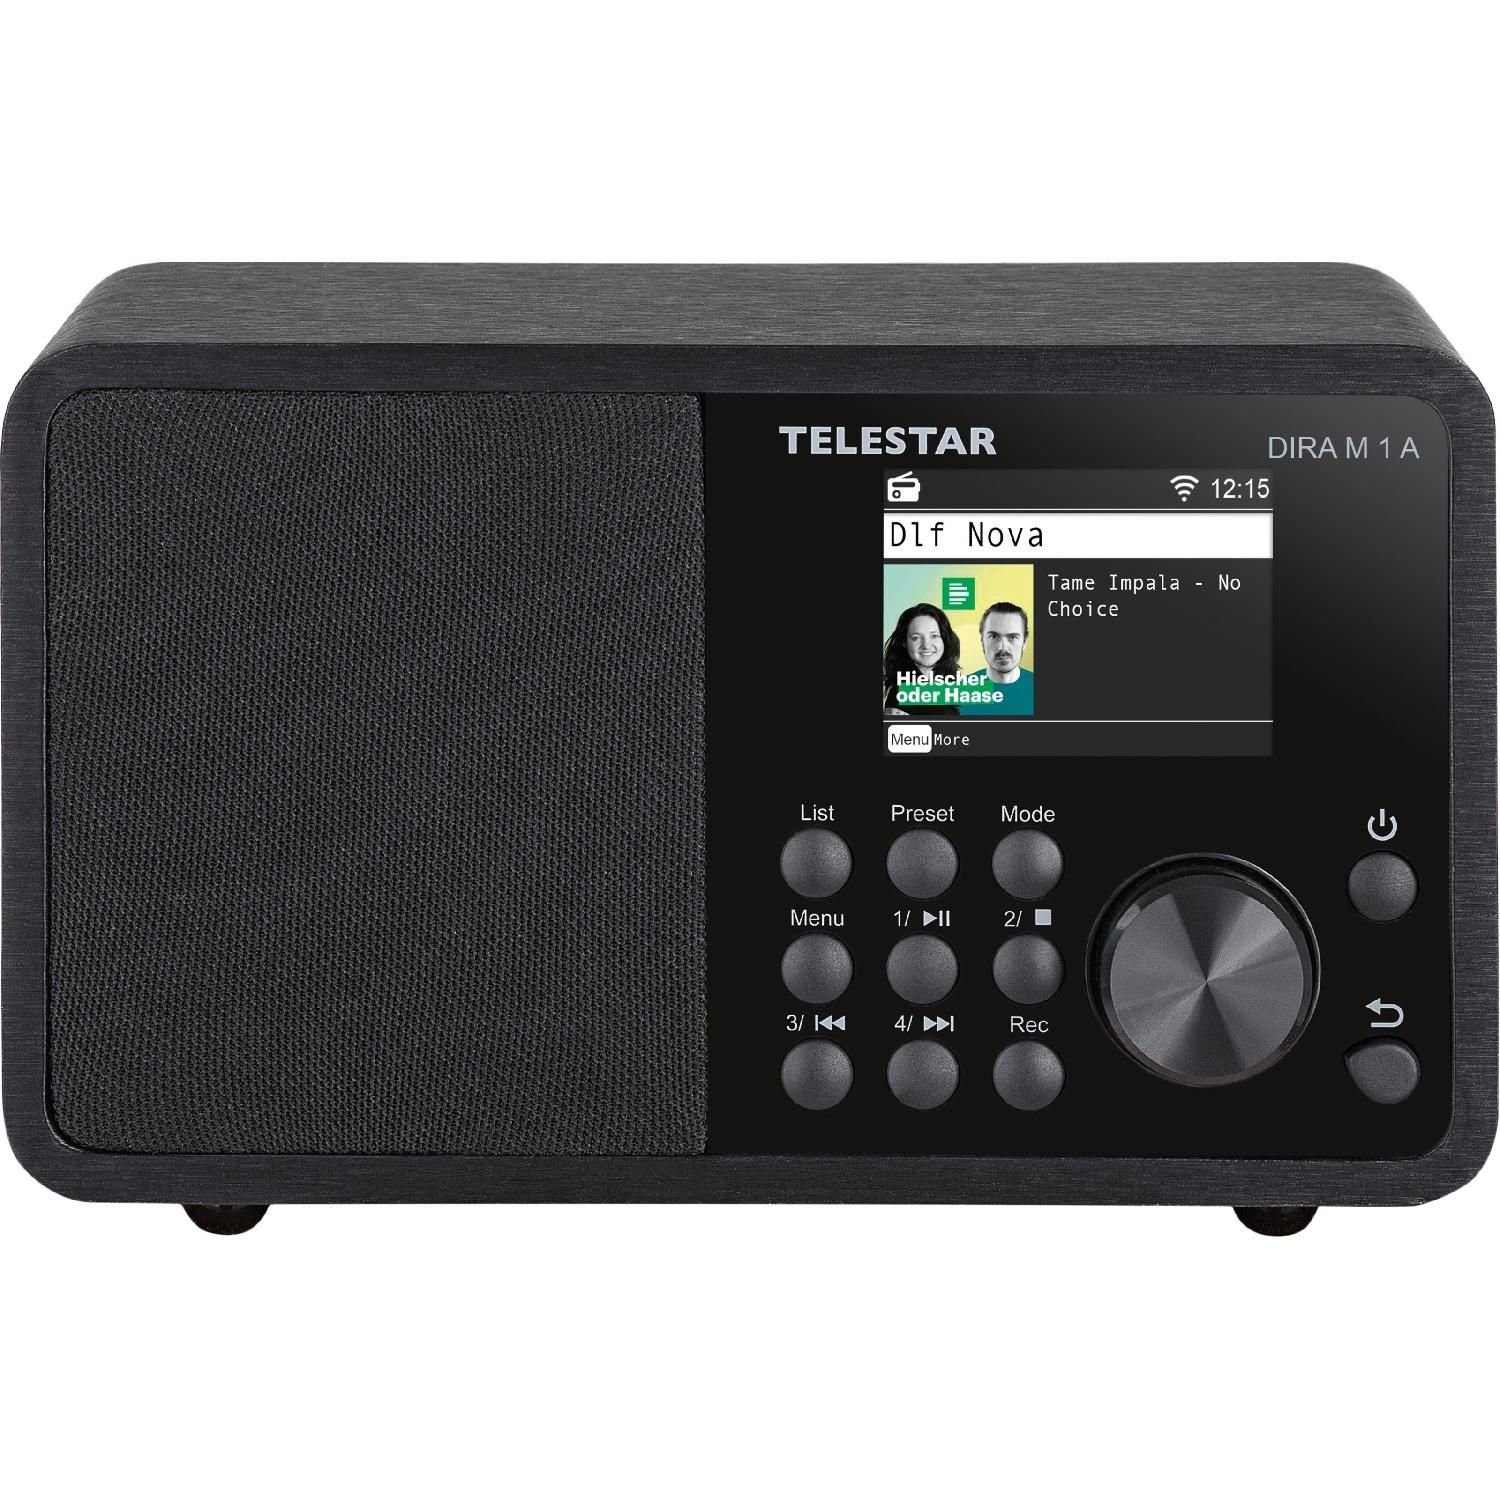 TELESTAR DIRA M 1 A DAB+ und Internetradio mit EWF Warnfunktion  Digitalradio (DAB) (USB Musikplayer für MP3, WMA, AAC oder WAV Dateien,  Aufzeichnung von Radiosendungen (DAB+/FM/Web) über Record-Taste oder Timer  möglich, 10